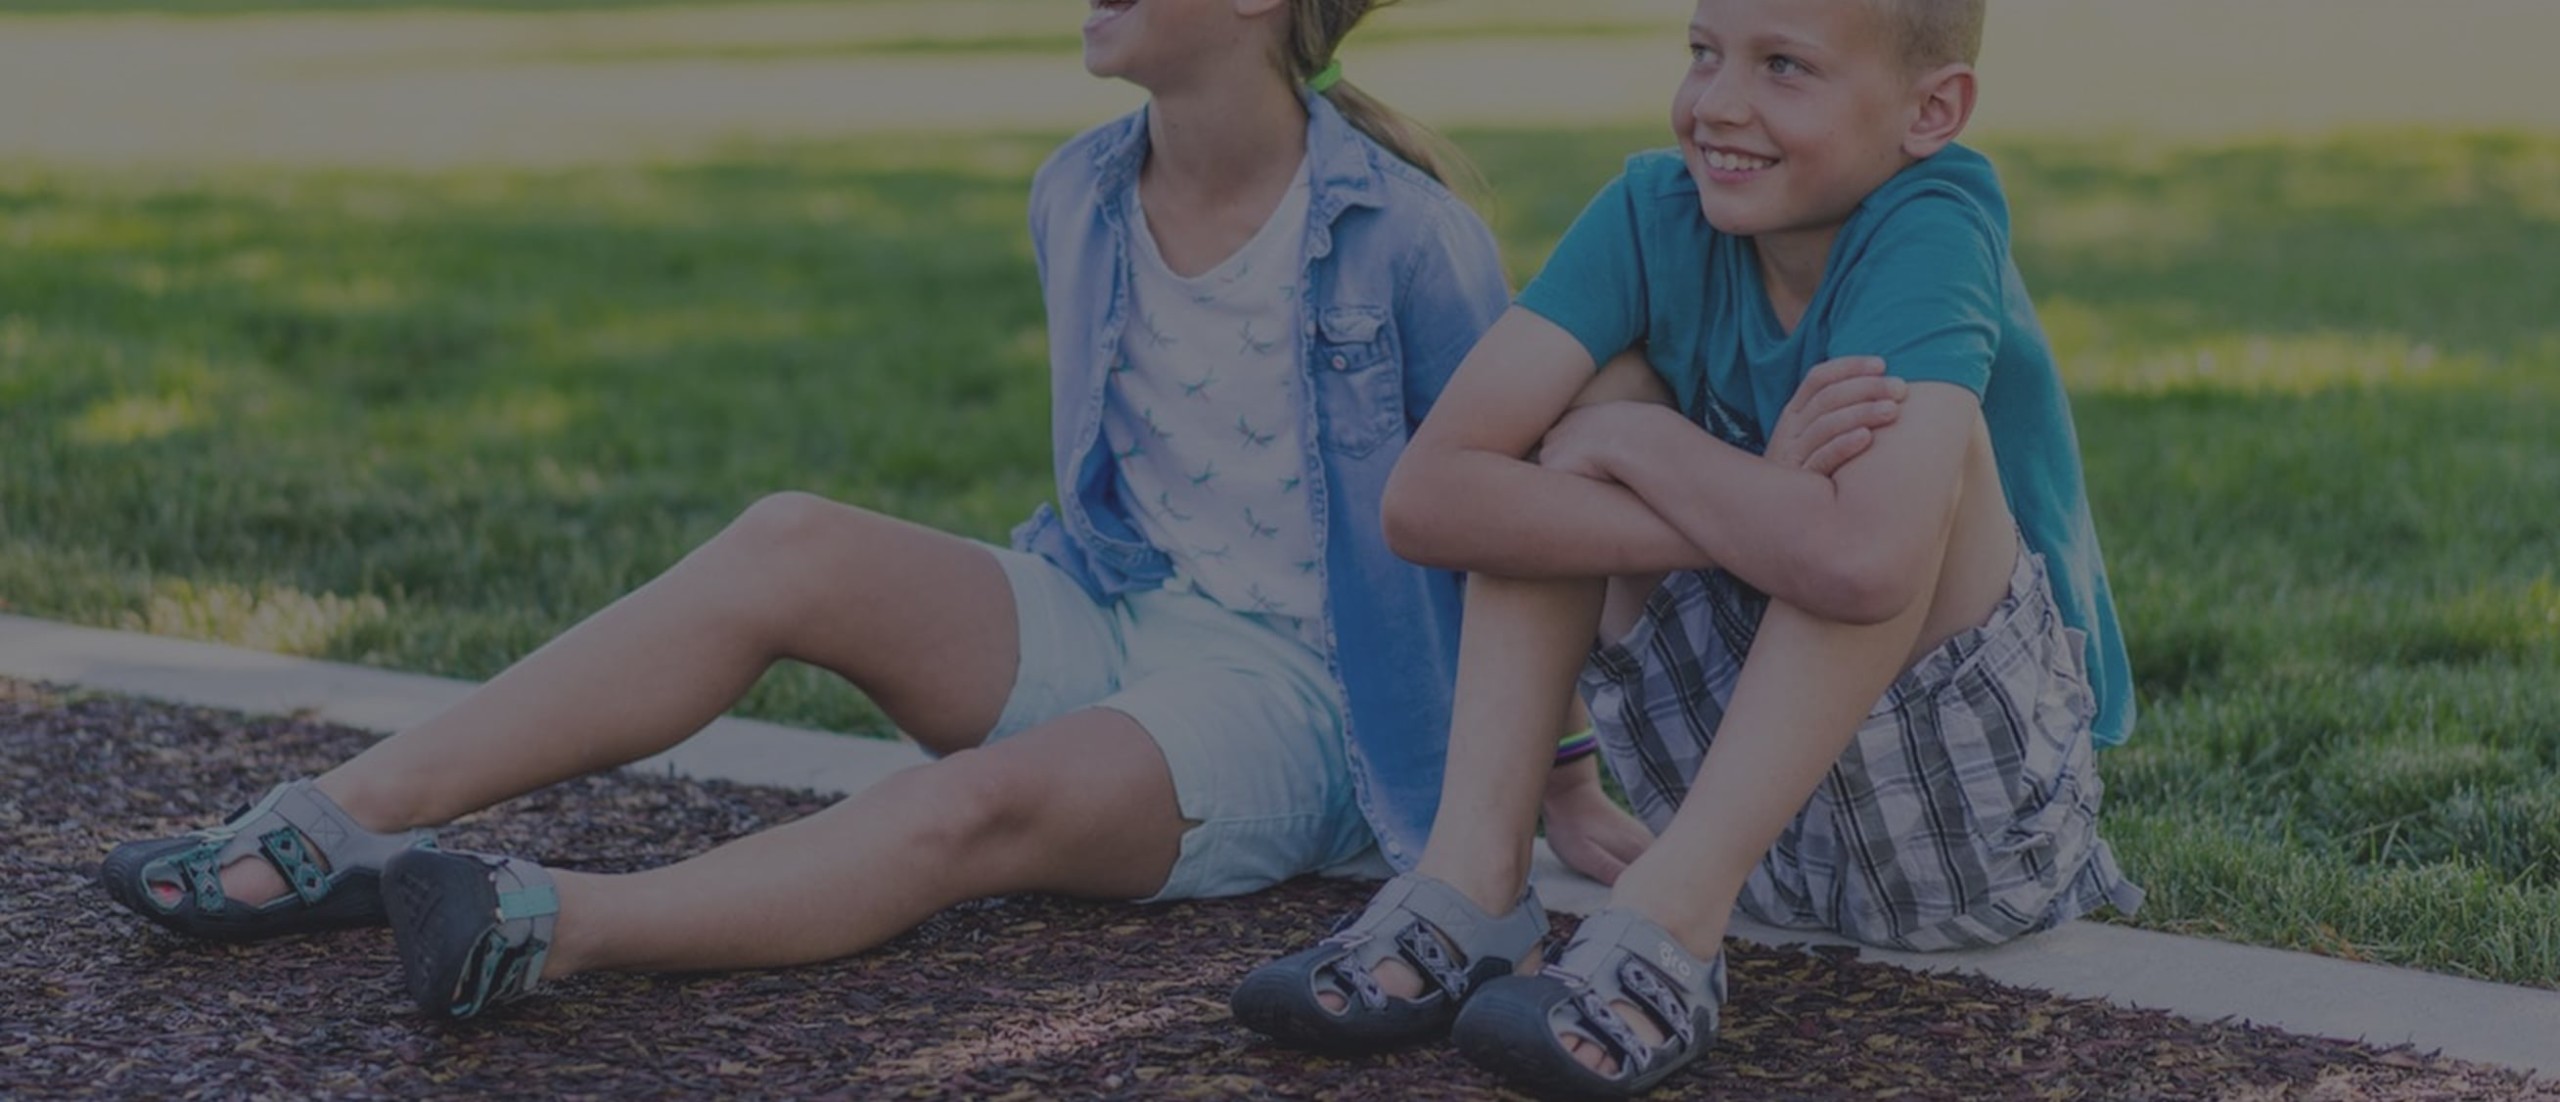 GroFive Expandals Kids Adjustable Footwear